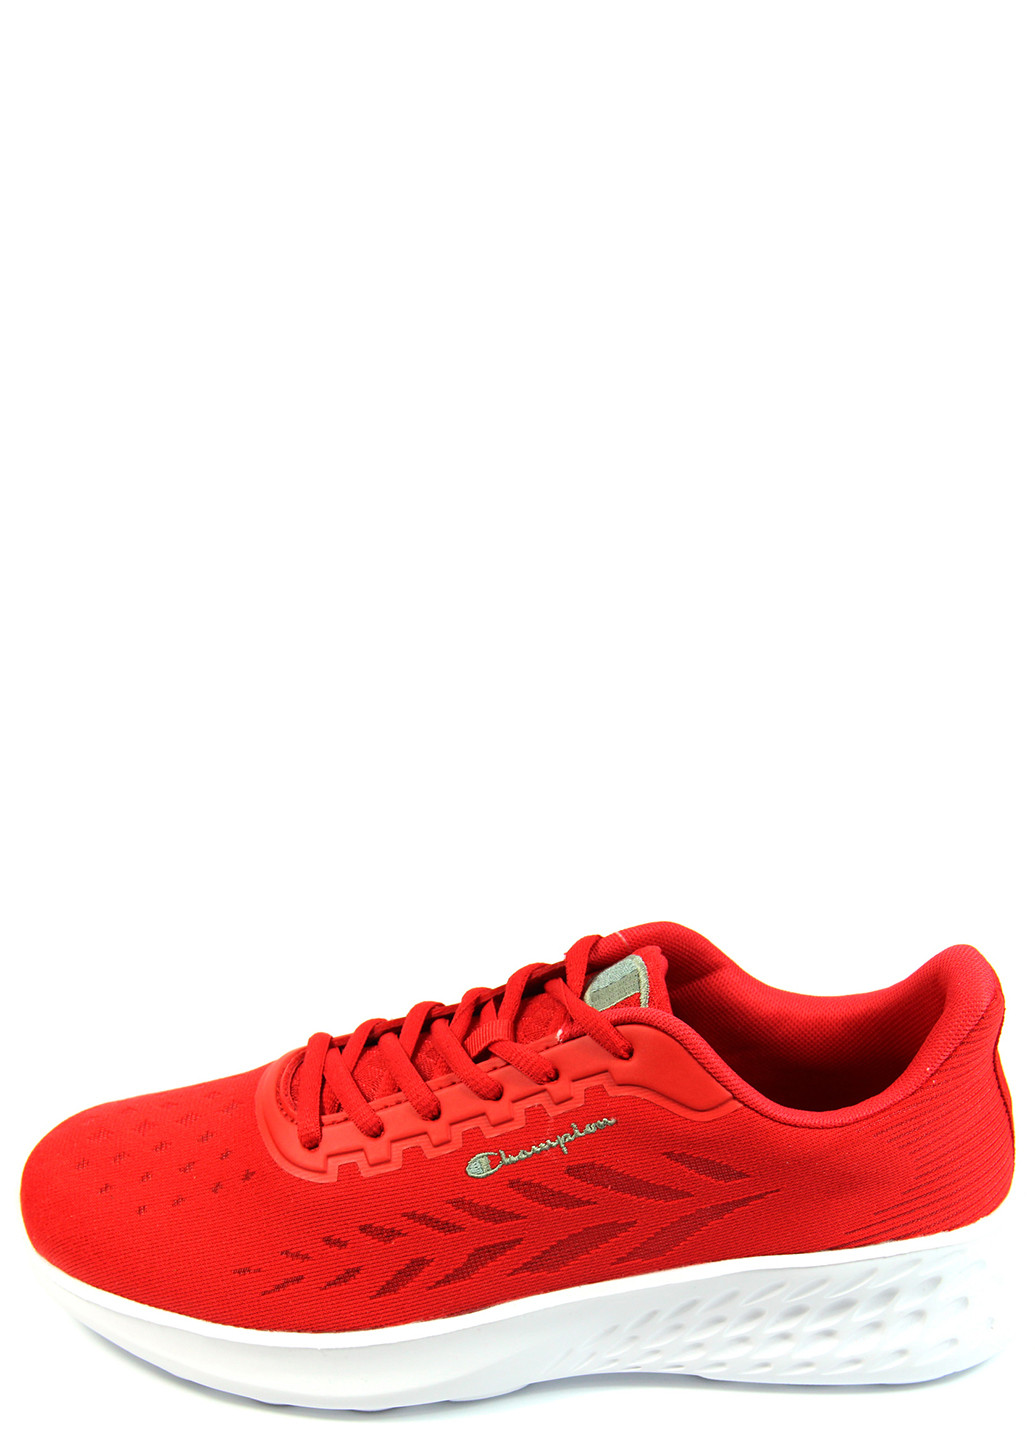 Красные демисезонные мужские кроссовки core element s21790-rs001 Champion